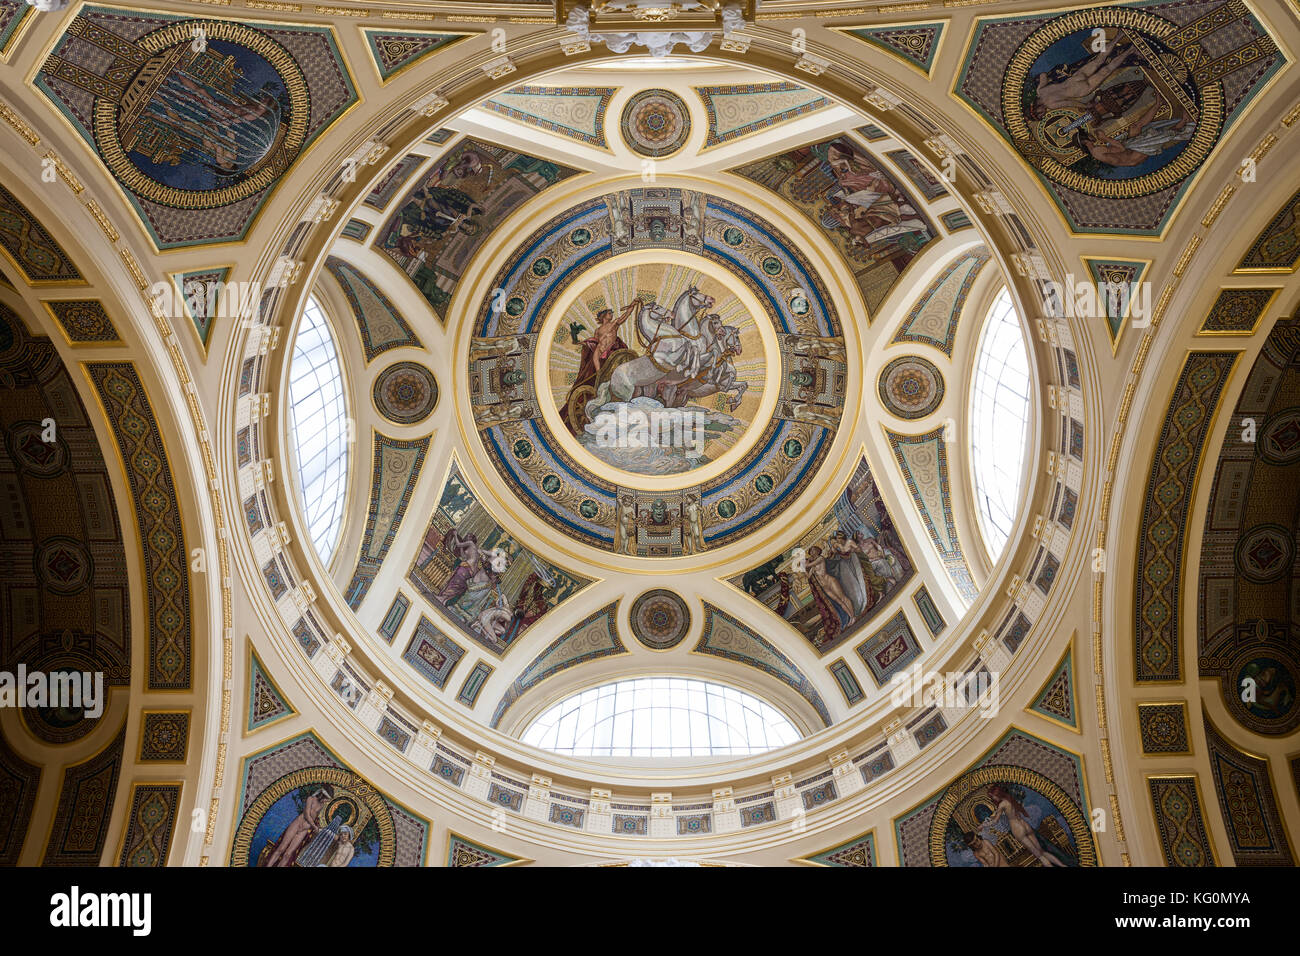 Des bains Szechenyi hall intérieur à Budapest, Hongrie, plafond avec coupole centrale, mosaïque avec le dieu solaire Helios sur son quadrige Banque D'Images